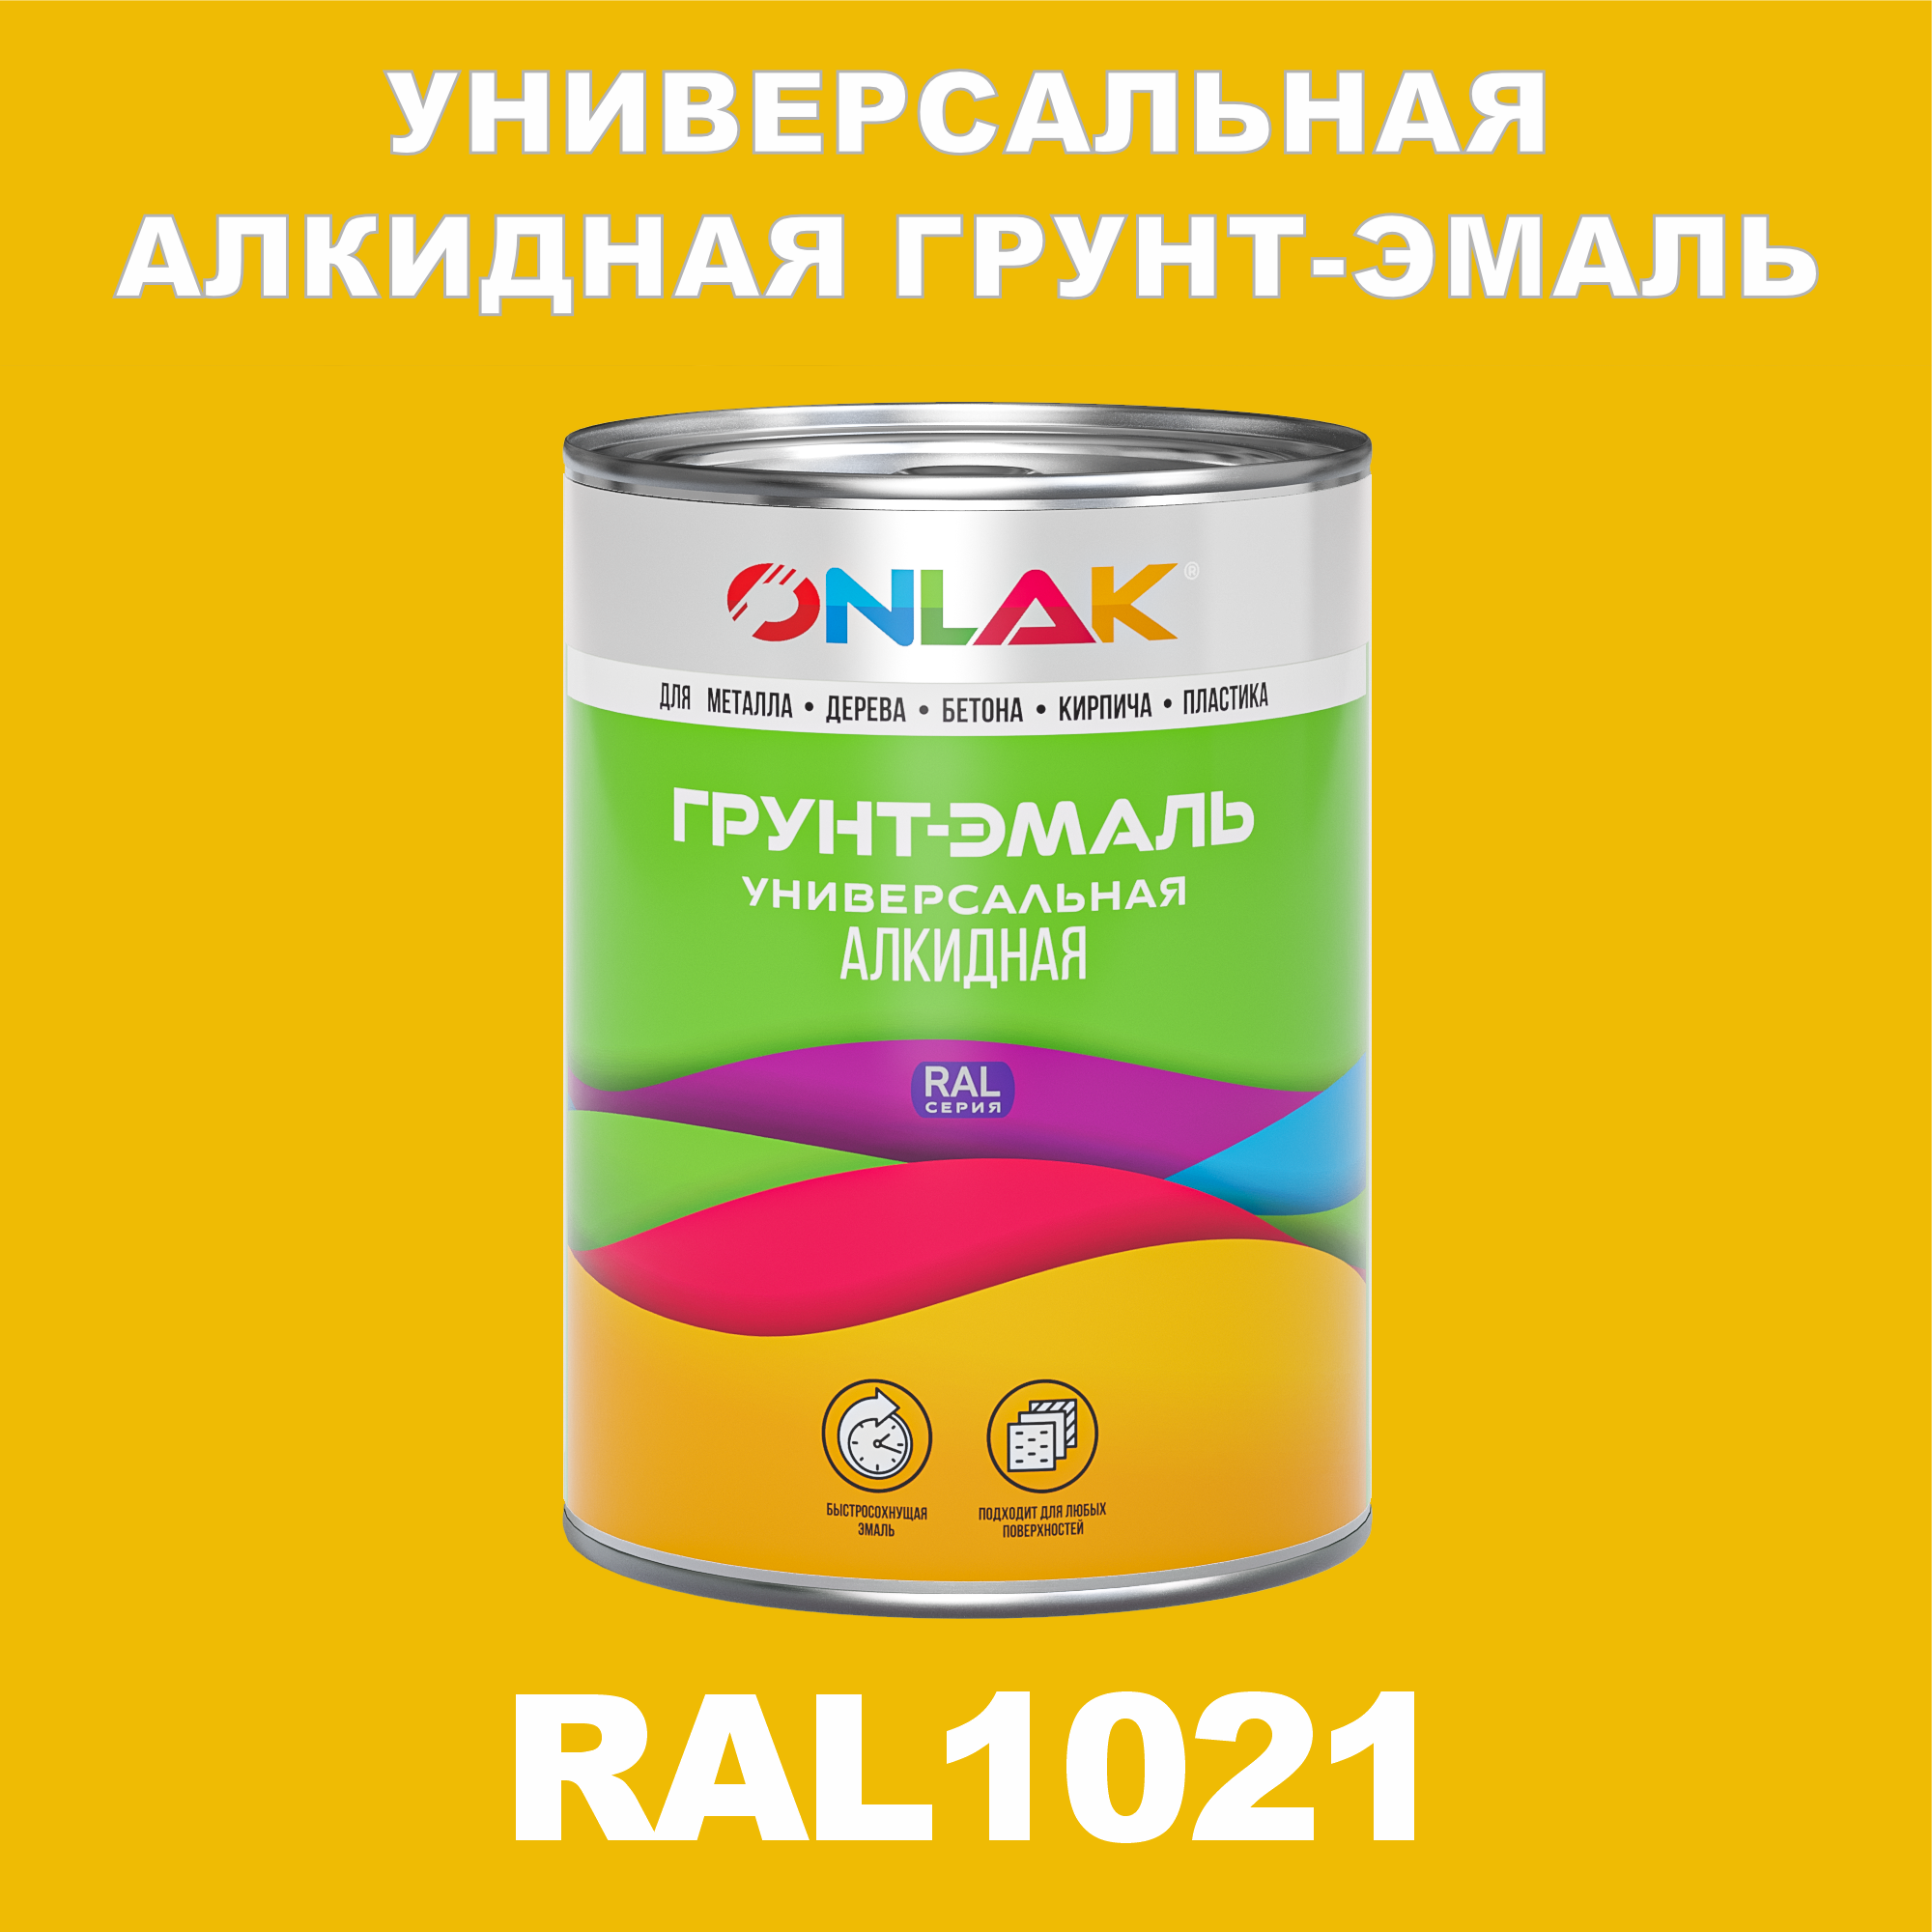 Грунт-эмаль ONLAK 1К RAL1021 антикоррозионная алкидная по металлу по ржавчине 1 кг грунт эмаль престиж по ржавчине алкидная зеленая 1 9 кг